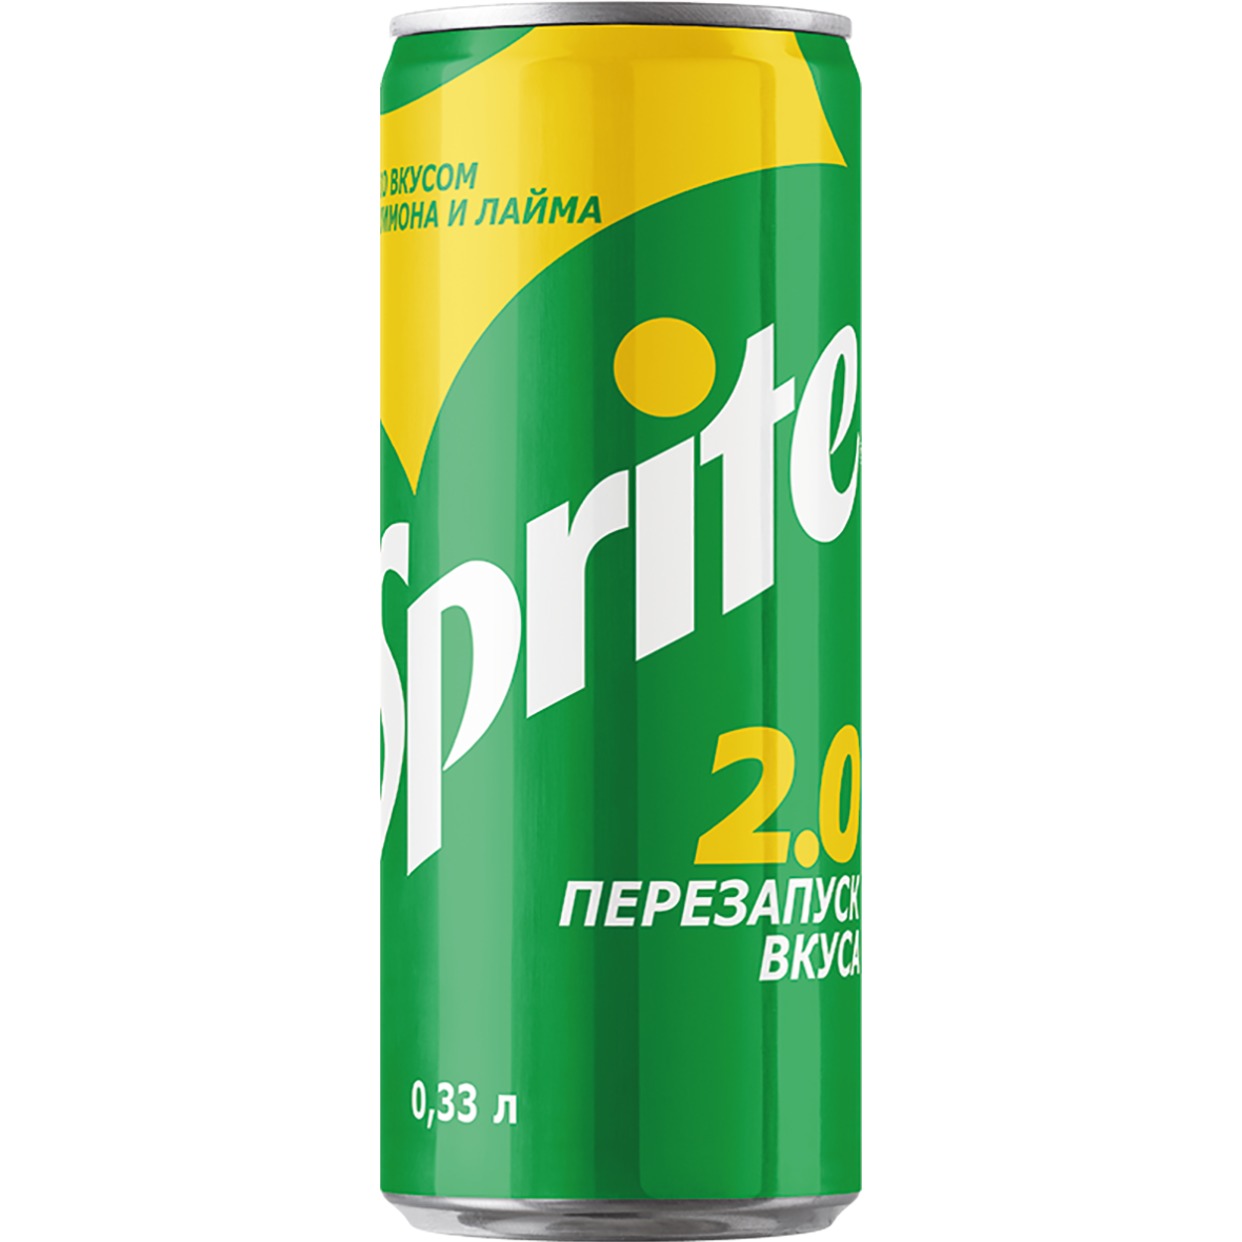 Напиток SPRITE газированный, ж/б 0.33л по акции в Пятерочке